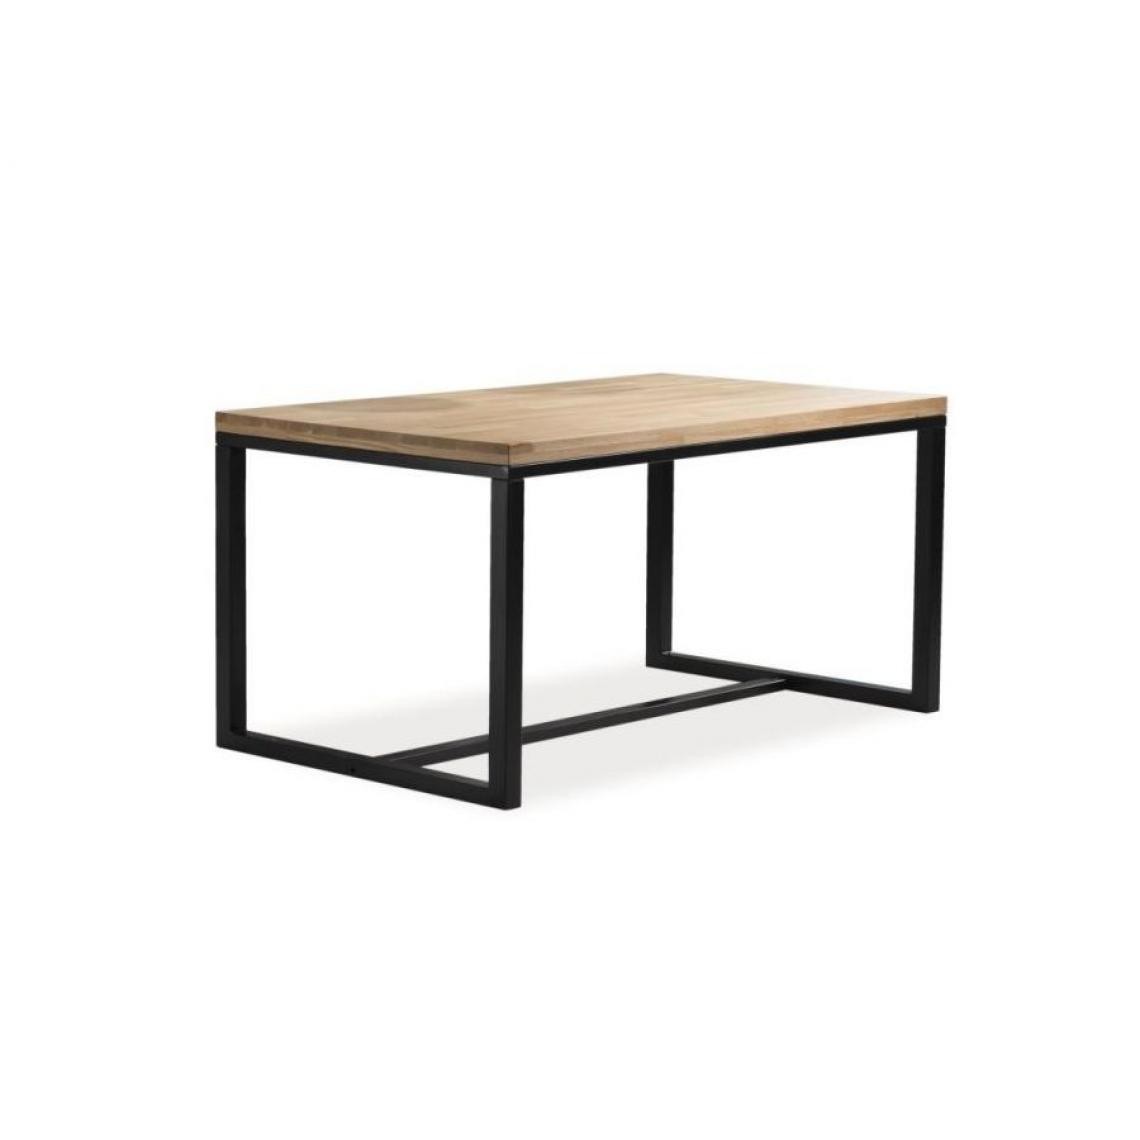 Hucoco - LORAB - Table moderne de style industriel - Dimensions : 180X90x78 cm - Plateau en placage naturel - Table fixe - Chêne - Tables à manger